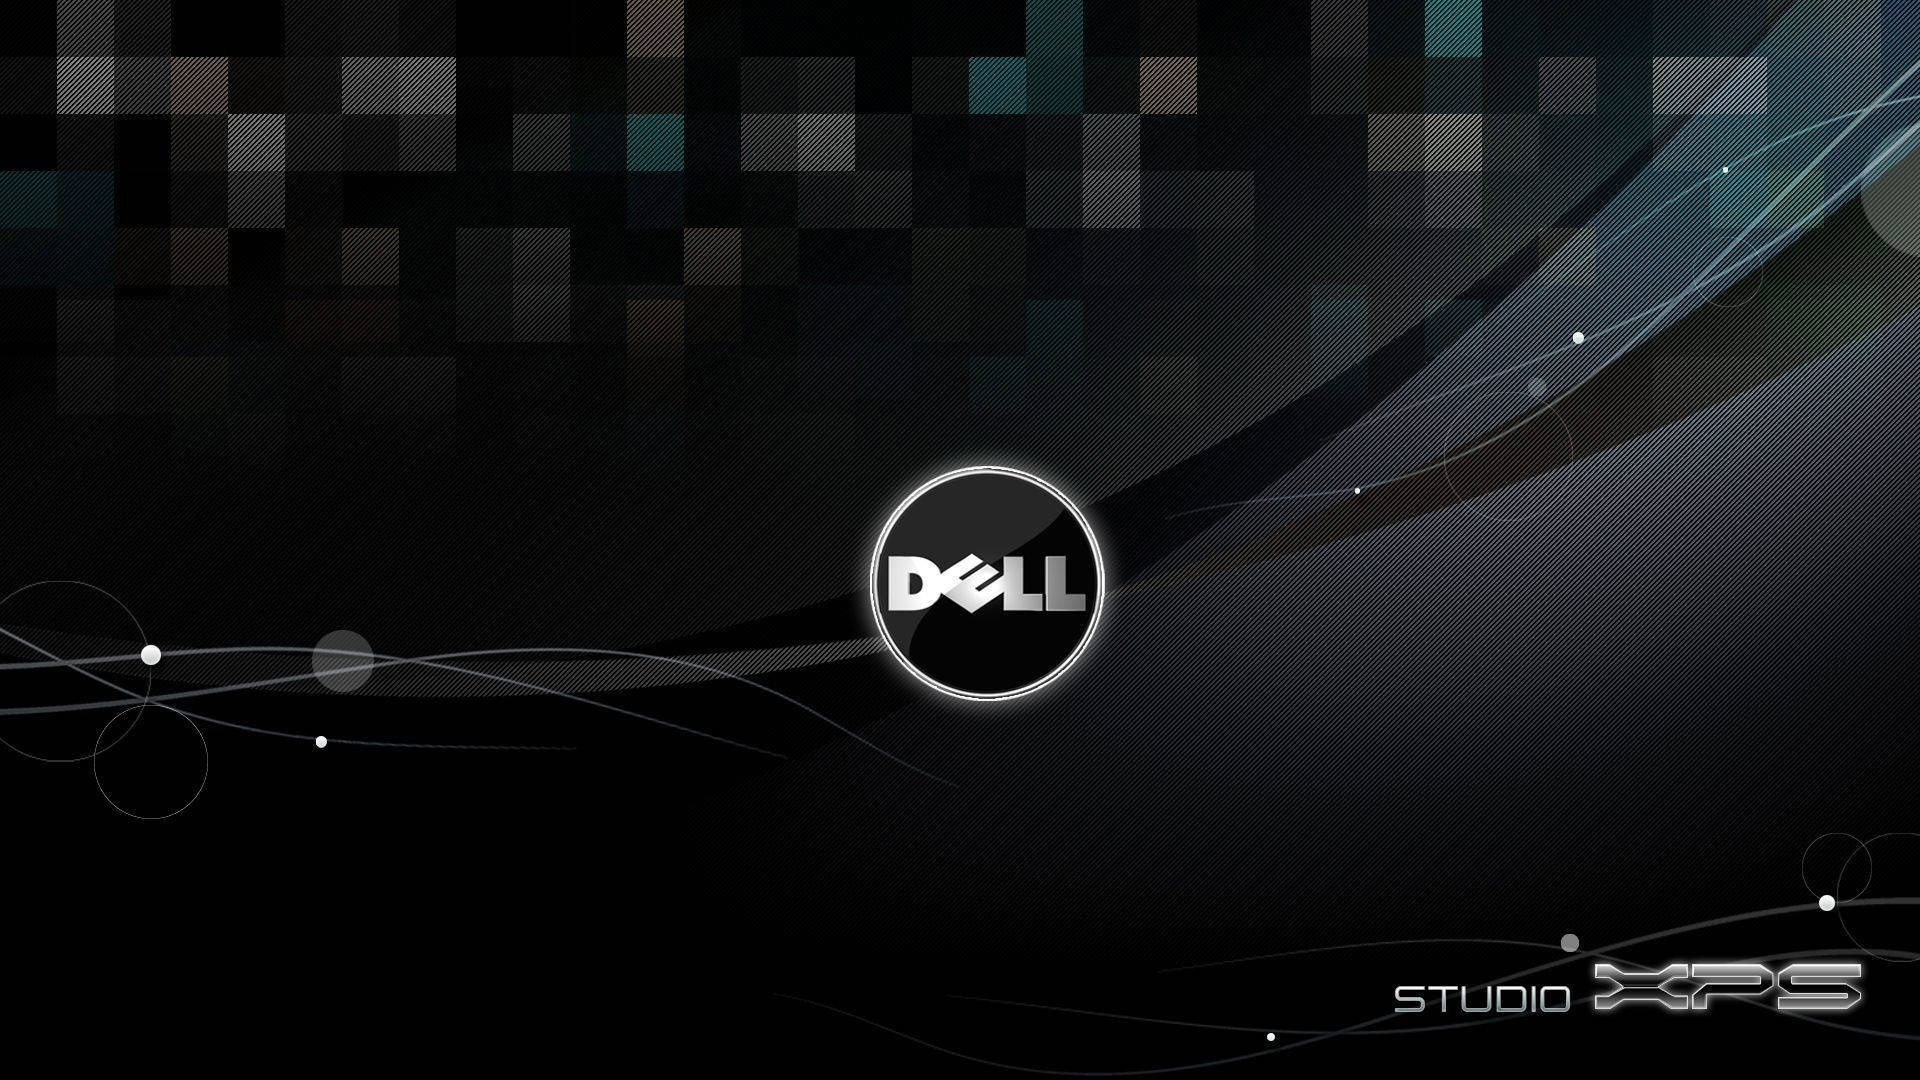 Studio Xps Dell Hd-logo Wallpaper